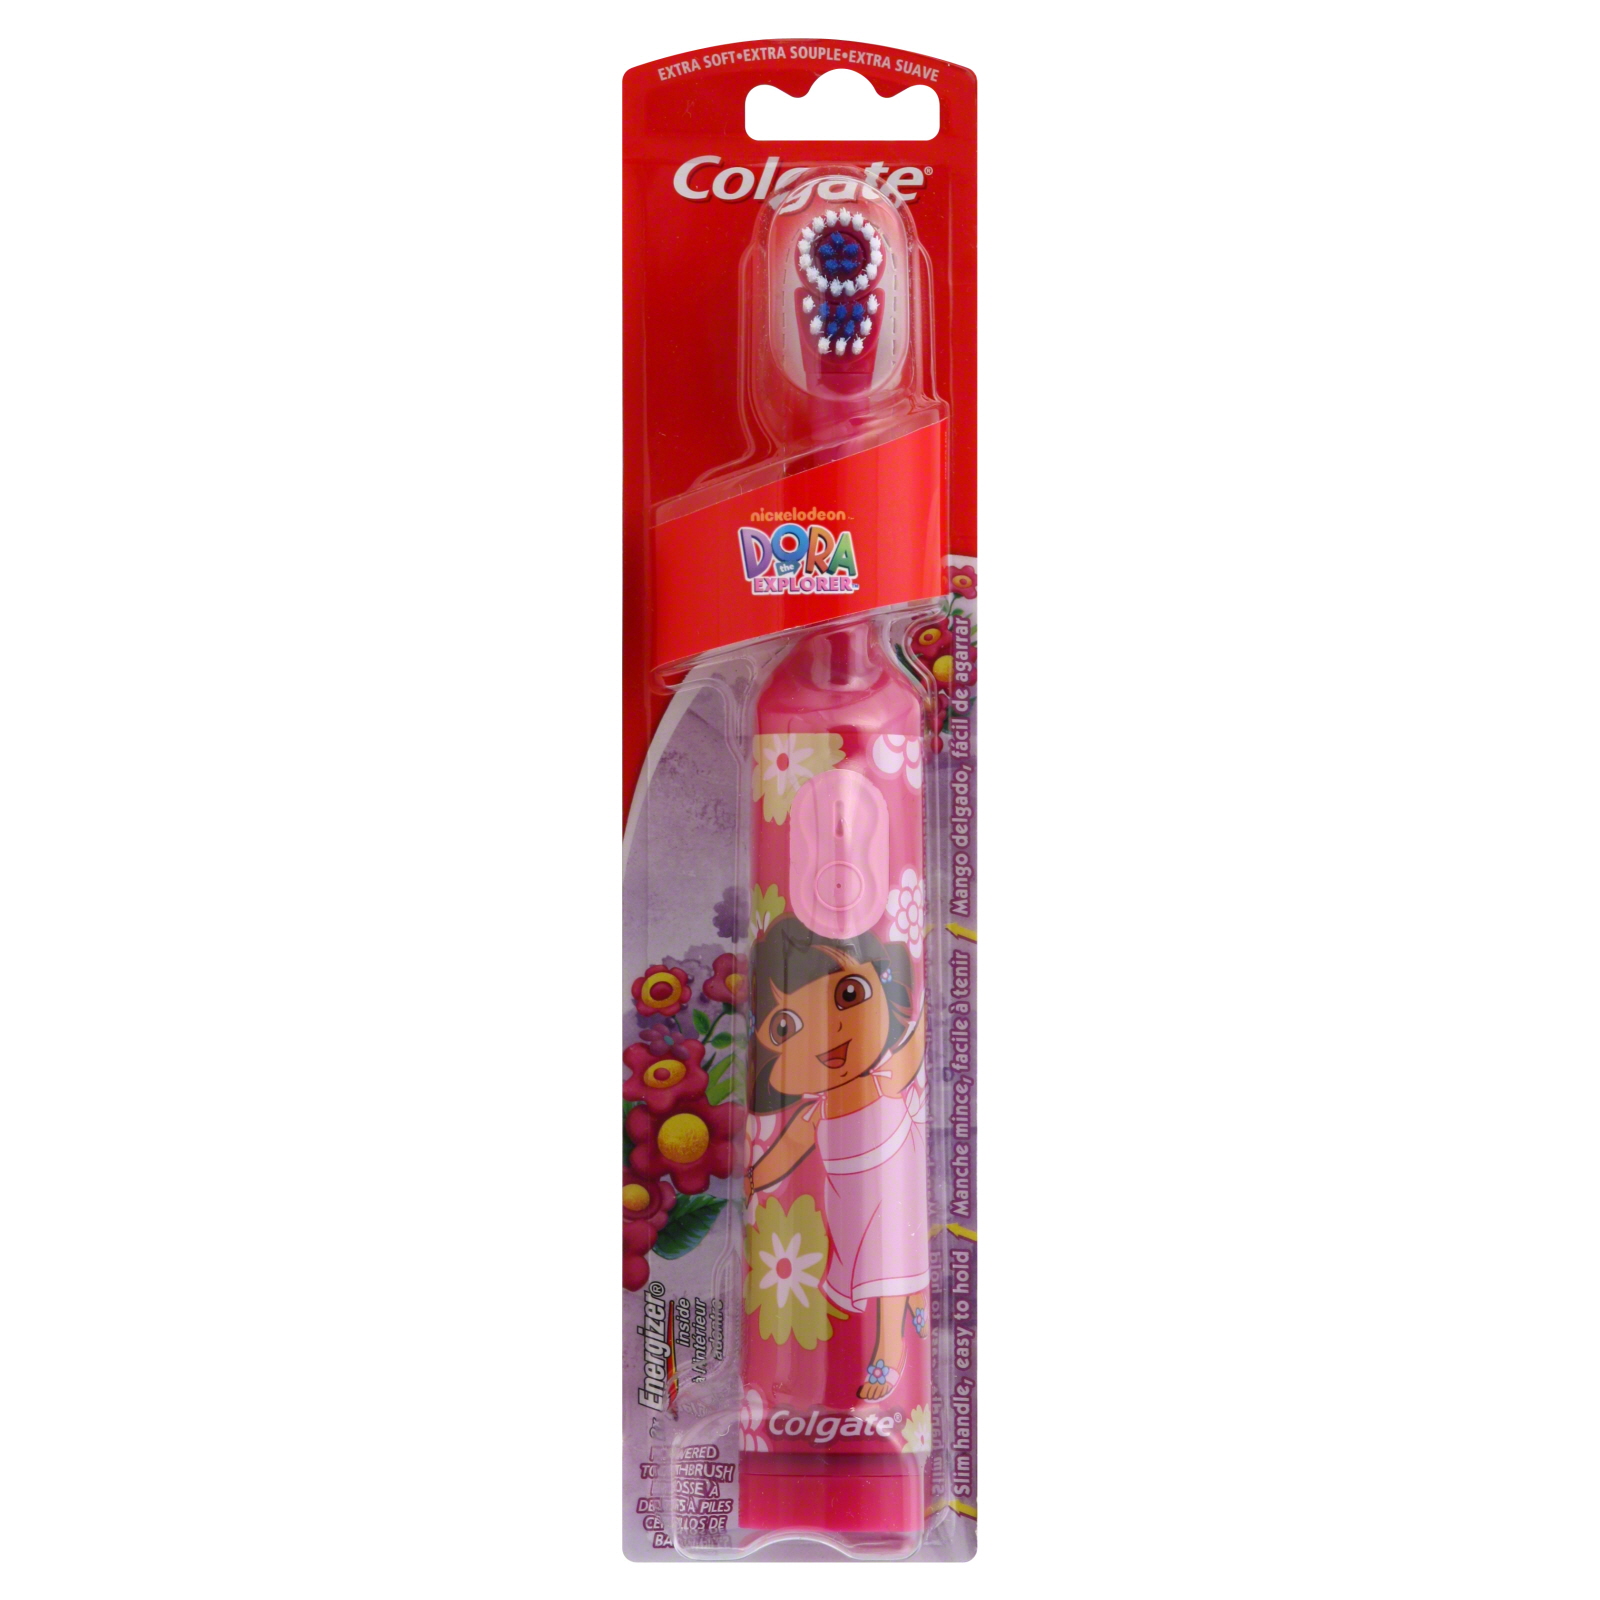 Colgate Toothbrush, Powered, Extra Soft, Nickelodeon Dora the Explorer, 1 toothbrush